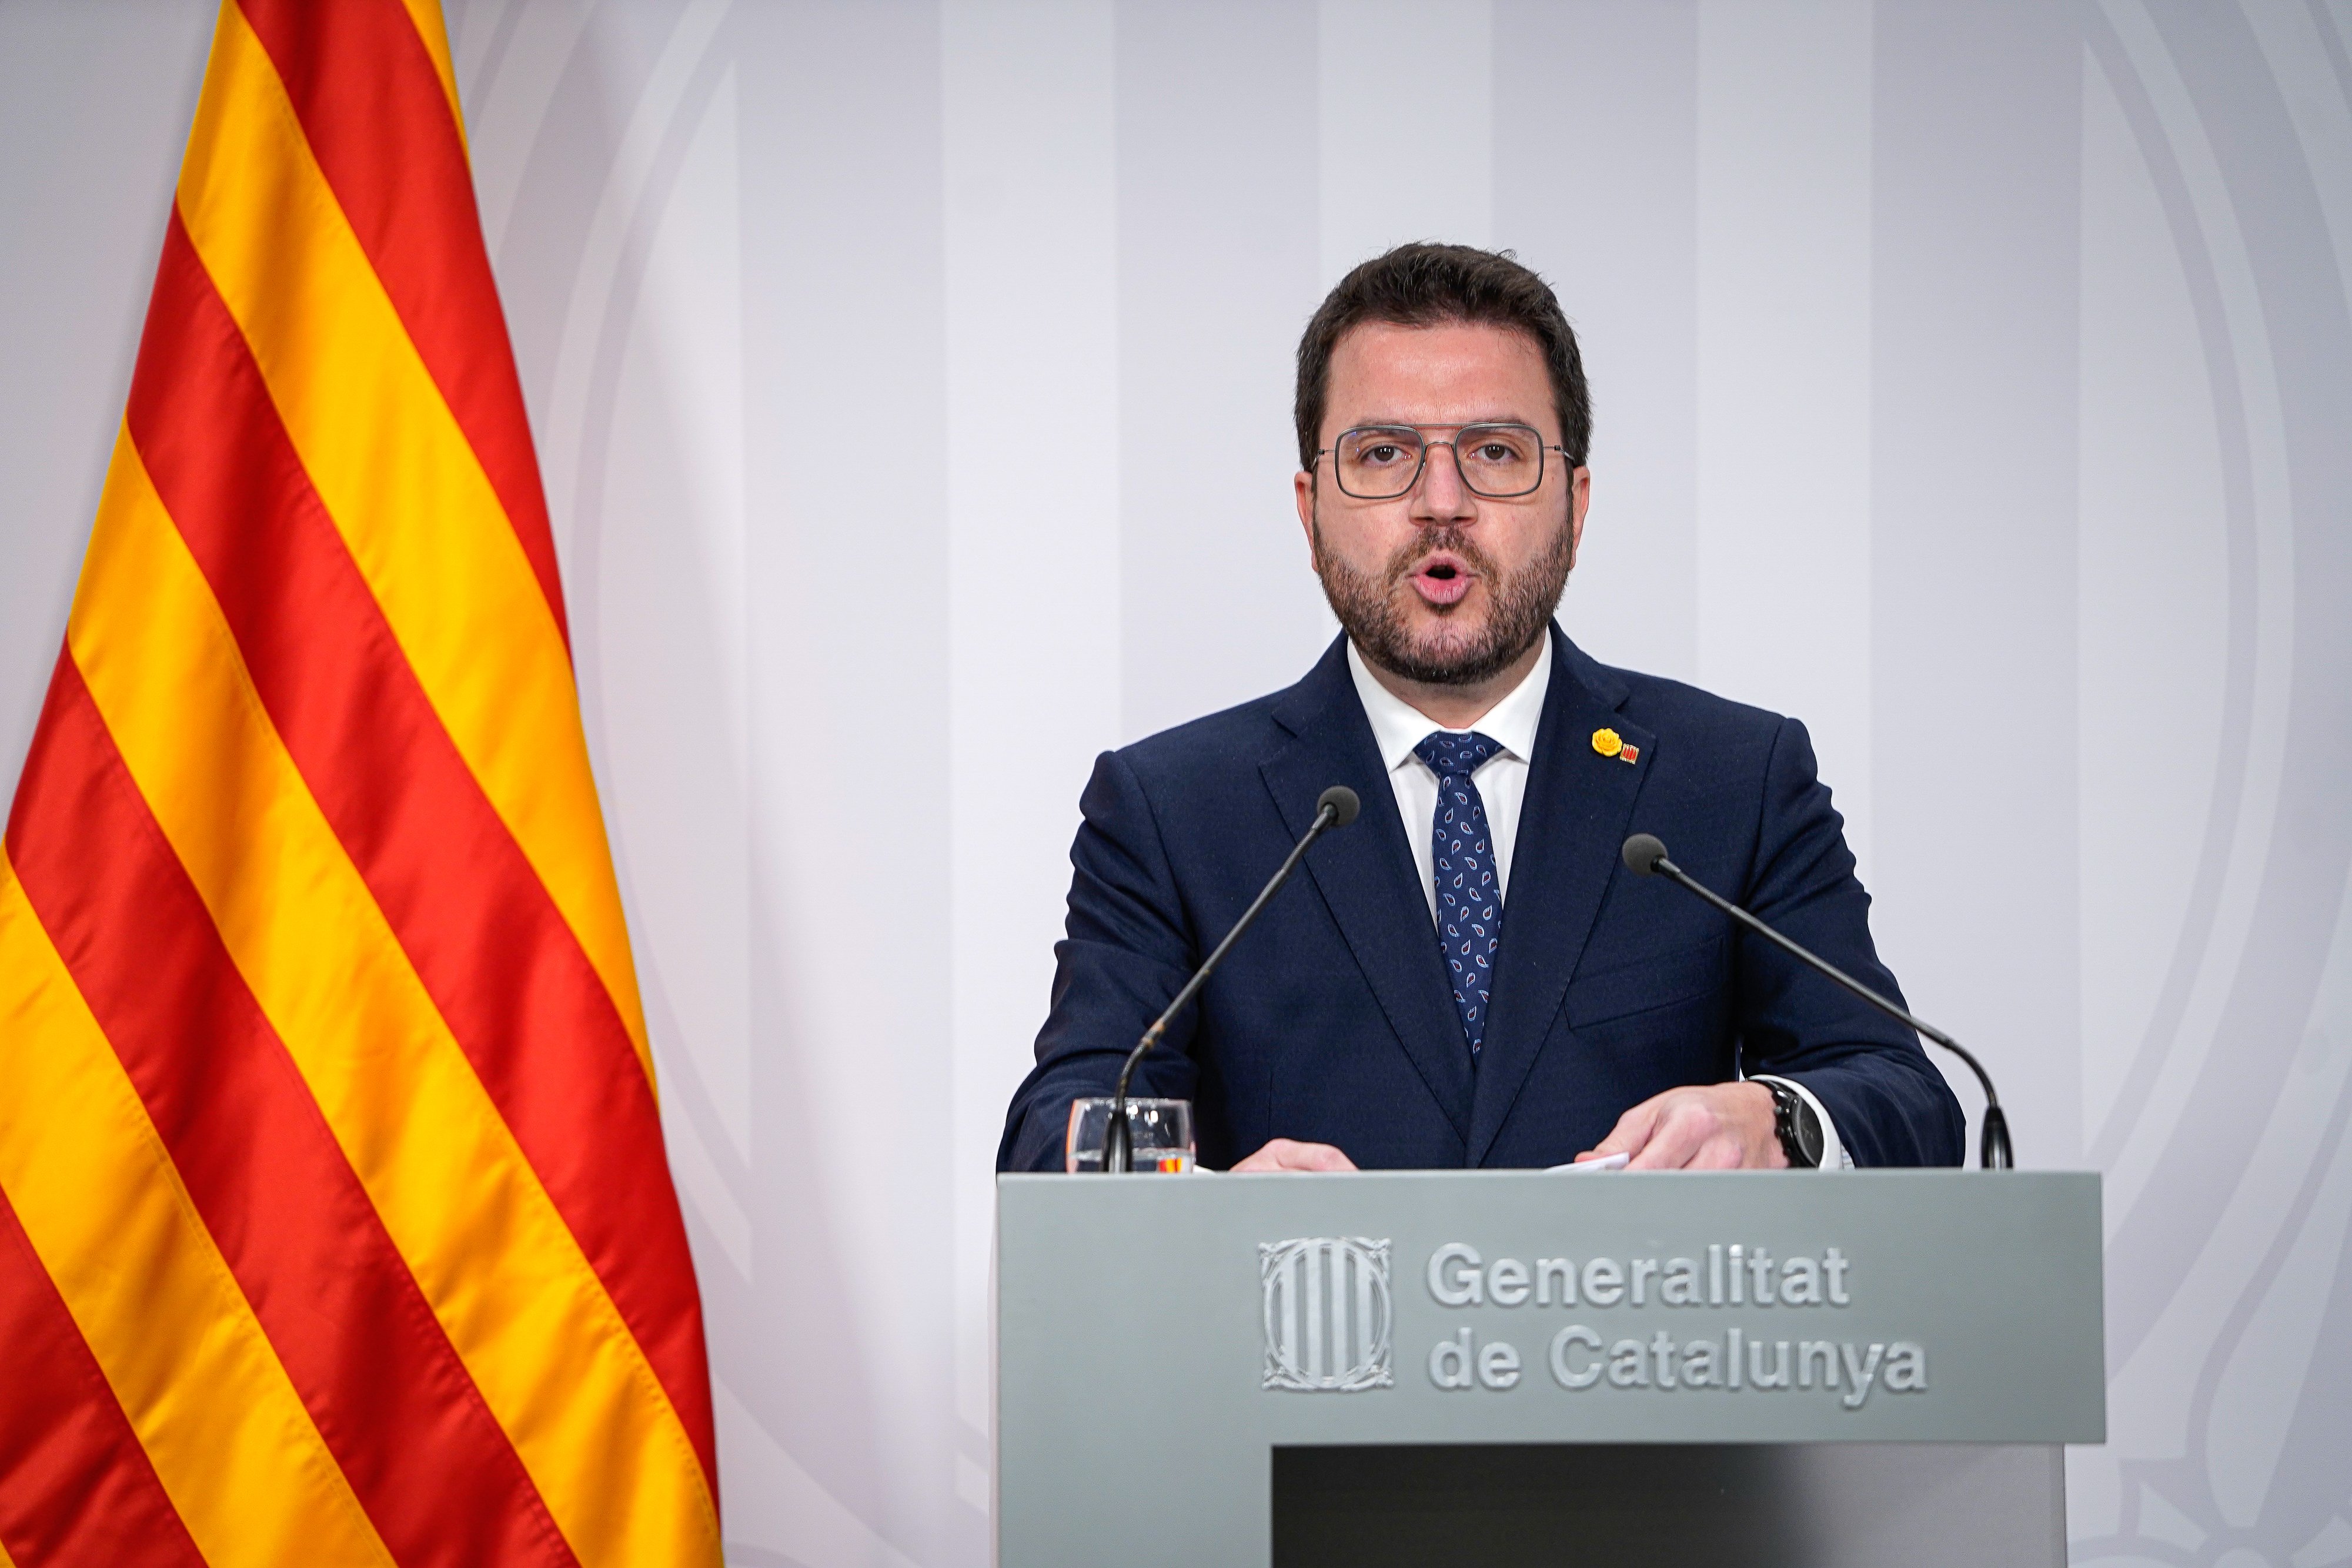 Aragonès defiende el acuerdo del catalán frente a "desobediencias retóricas"